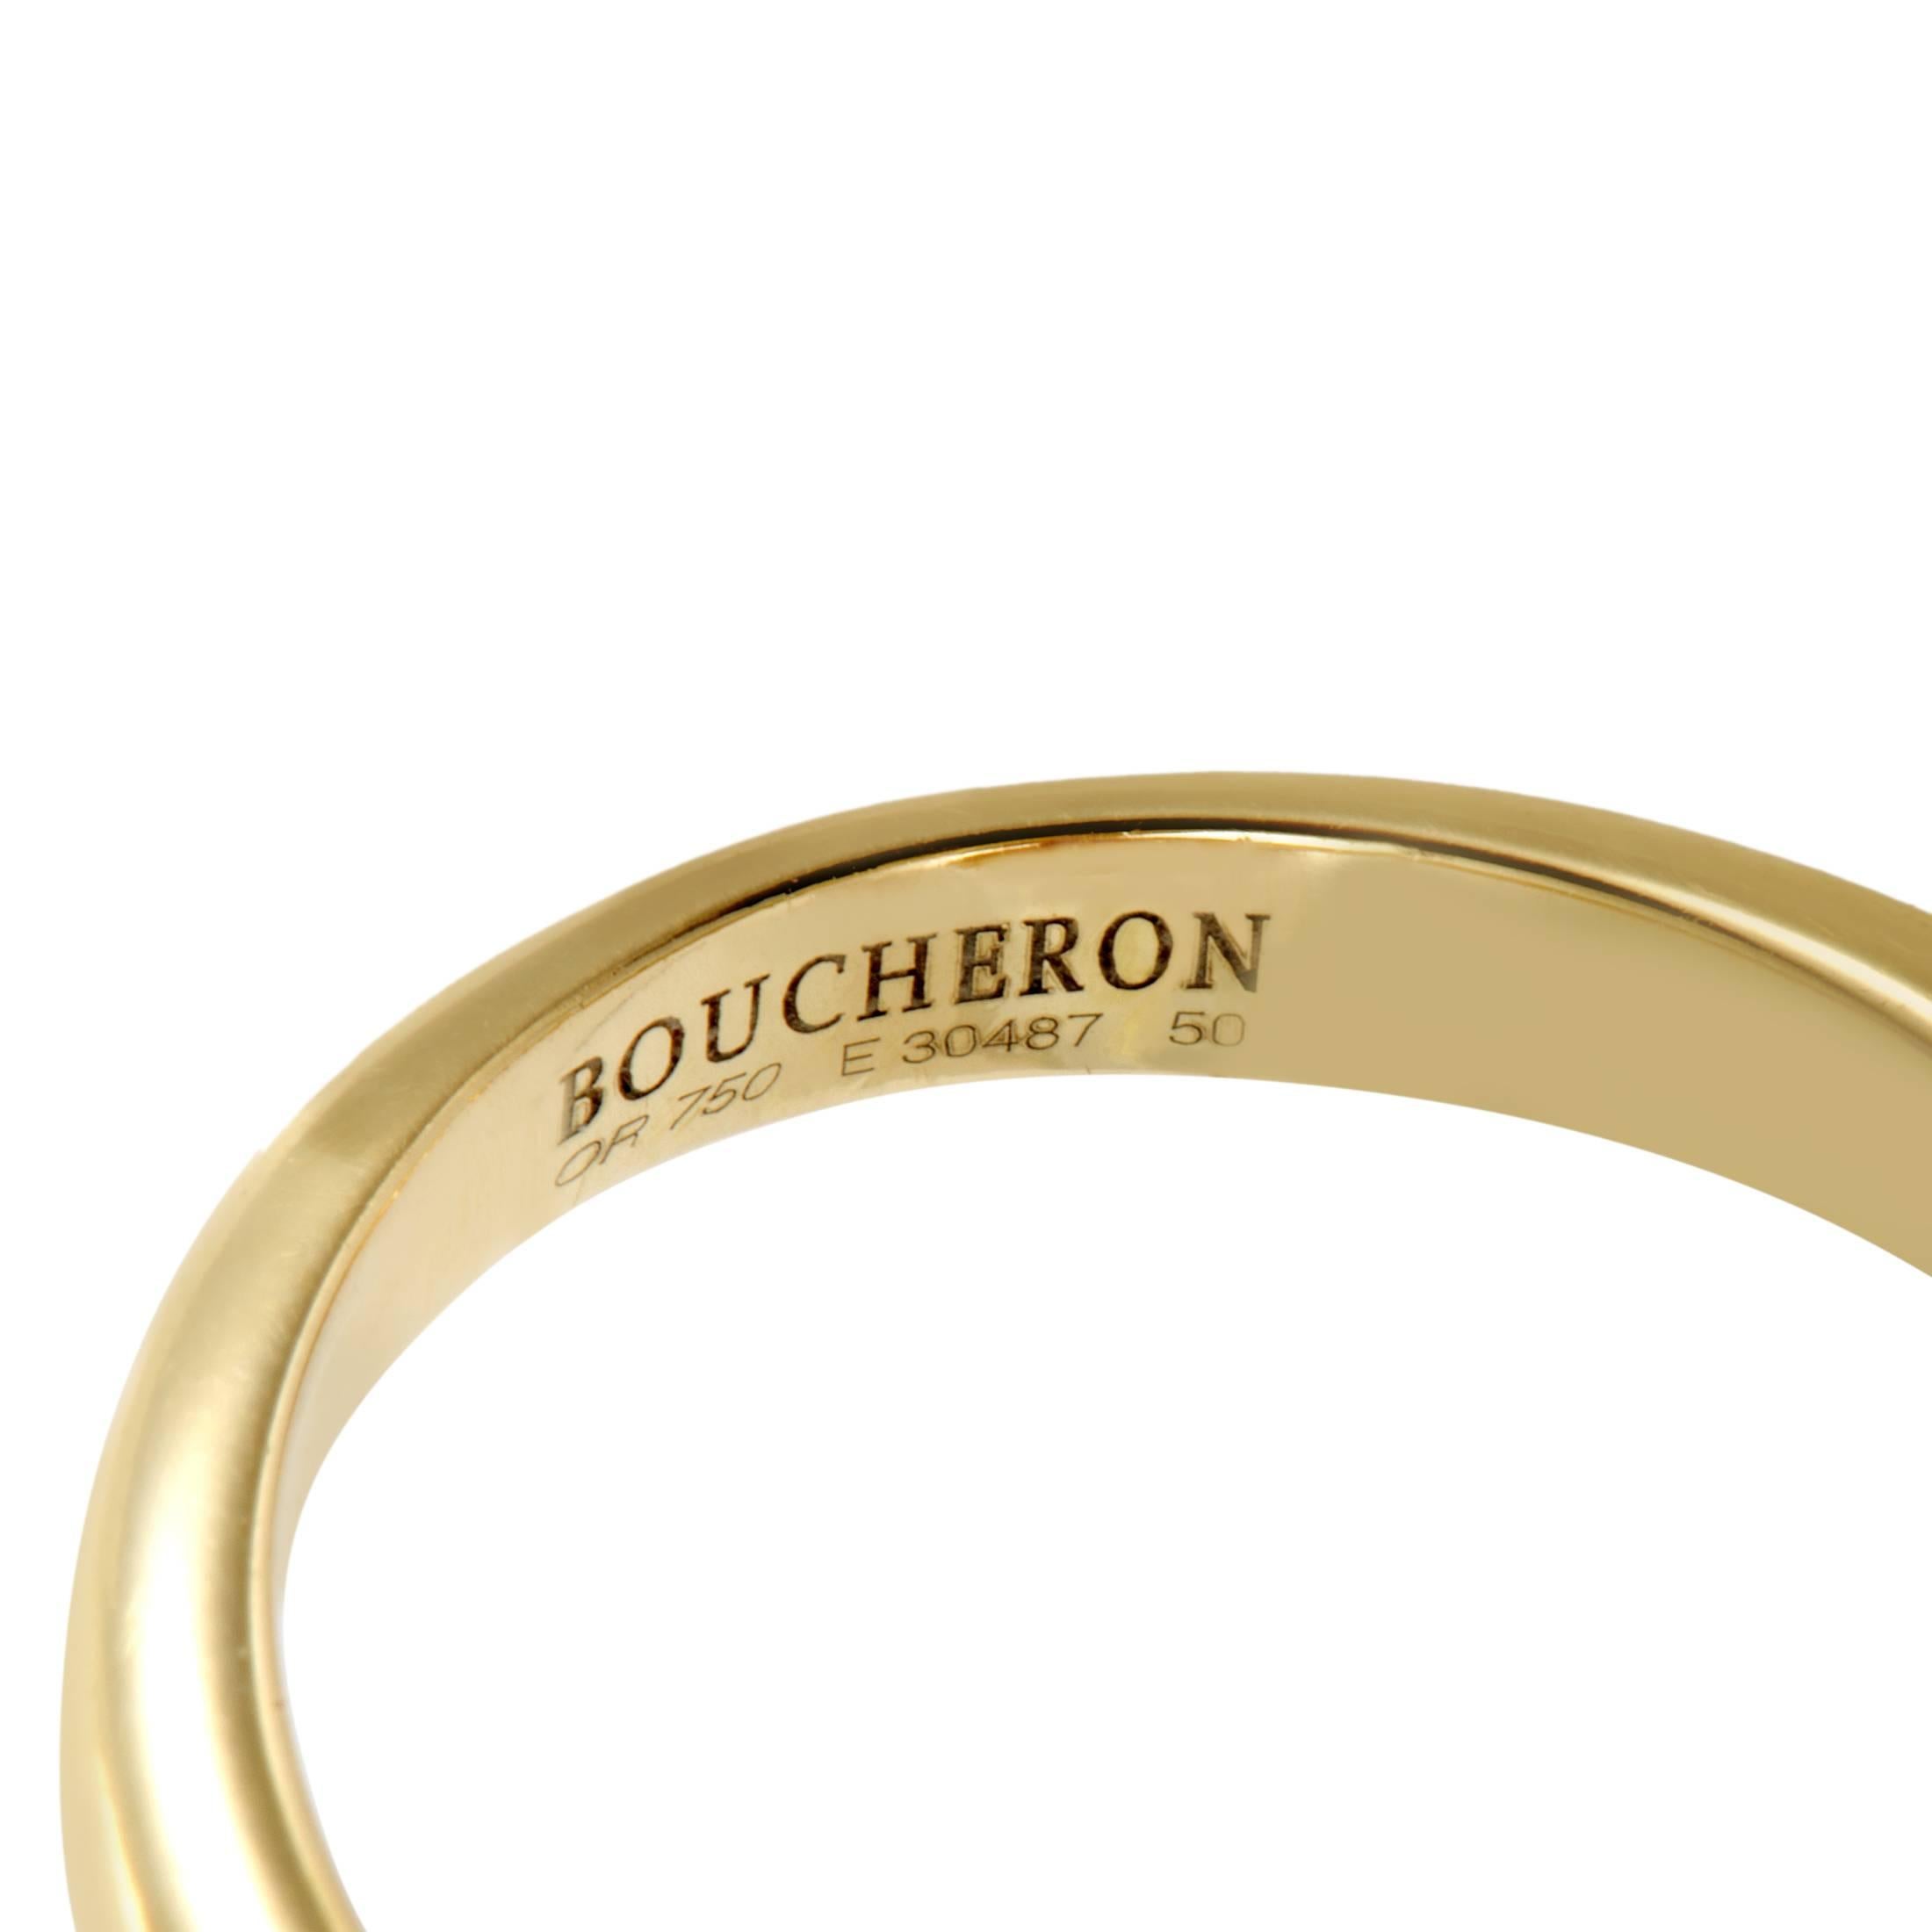 Boucheron Toi et Moi Ruby Diamond Yellow Gold Ring 1